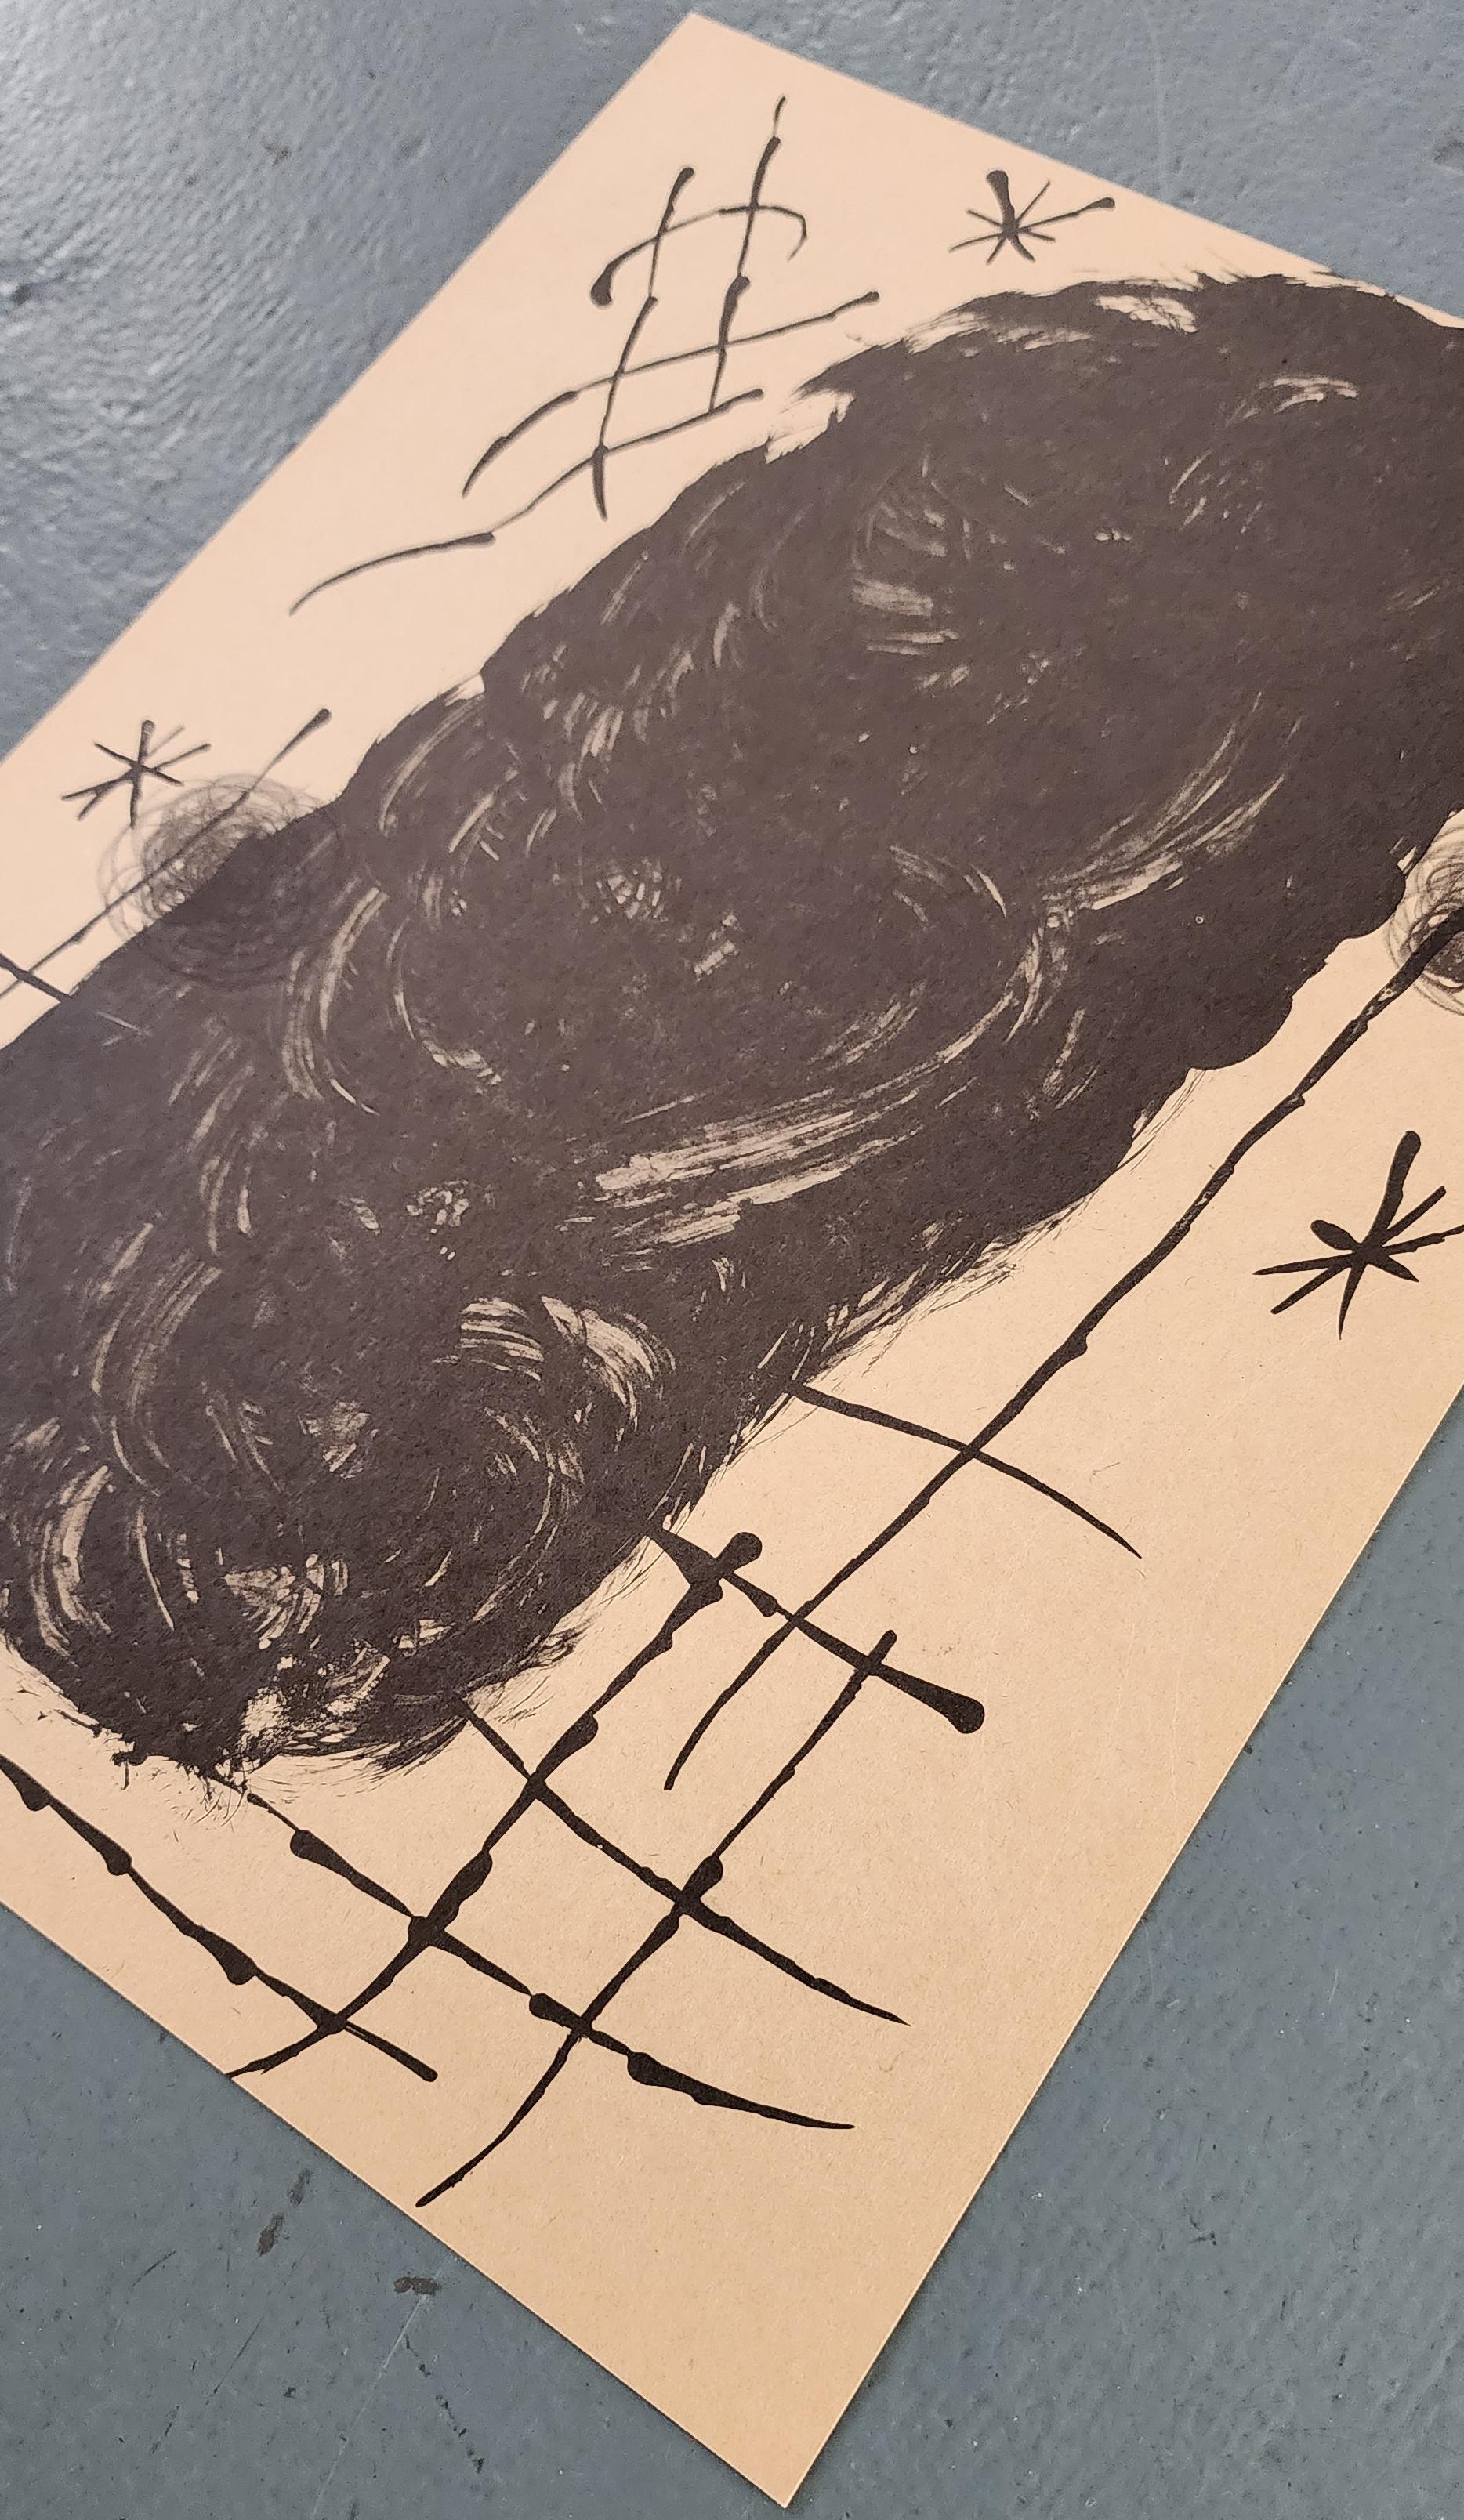 Lithographier Originale (Les Peintures Sur Carton) (Abstrakt, lustig, gestisch) (Abstrakter Expressionismus), Print, von Joan Miró